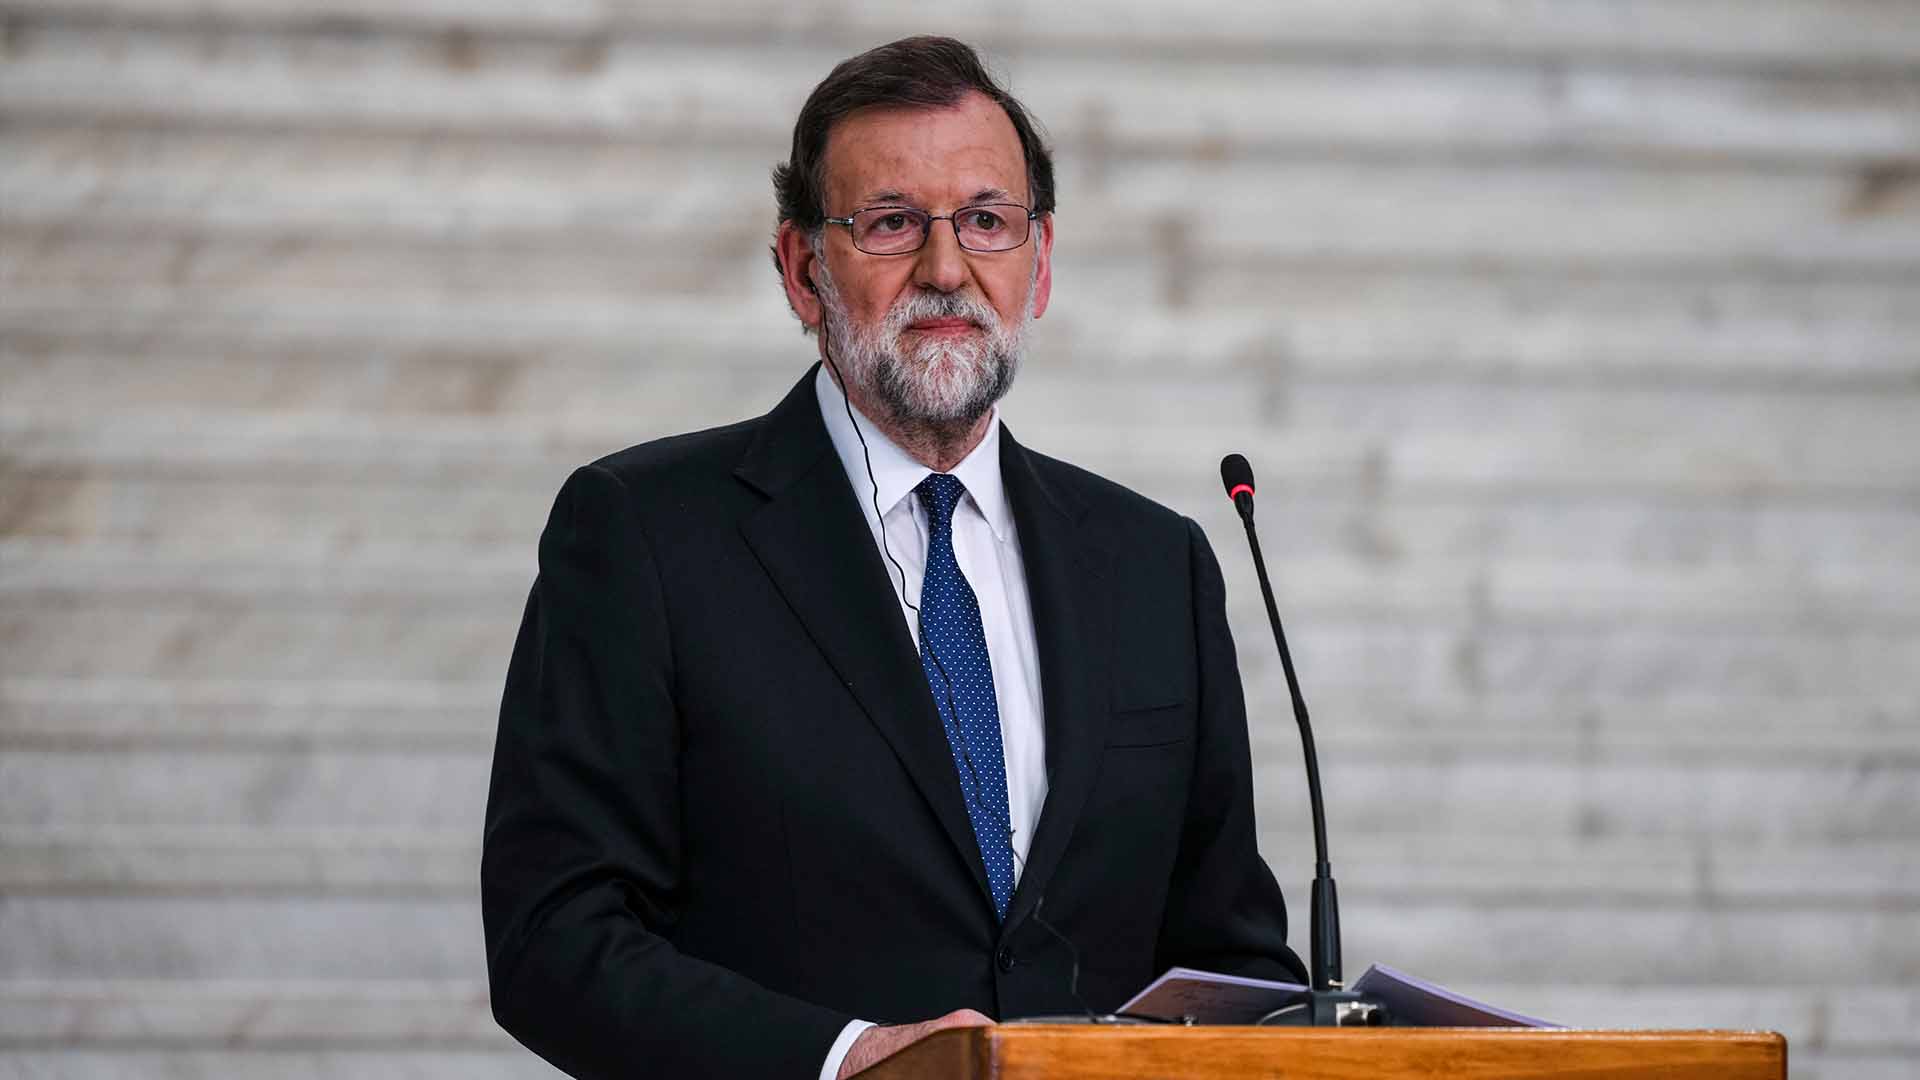 Rajoy rechaza el Govern "inviable" de Torra y pide un equipo capaz de dialogar "en serio"